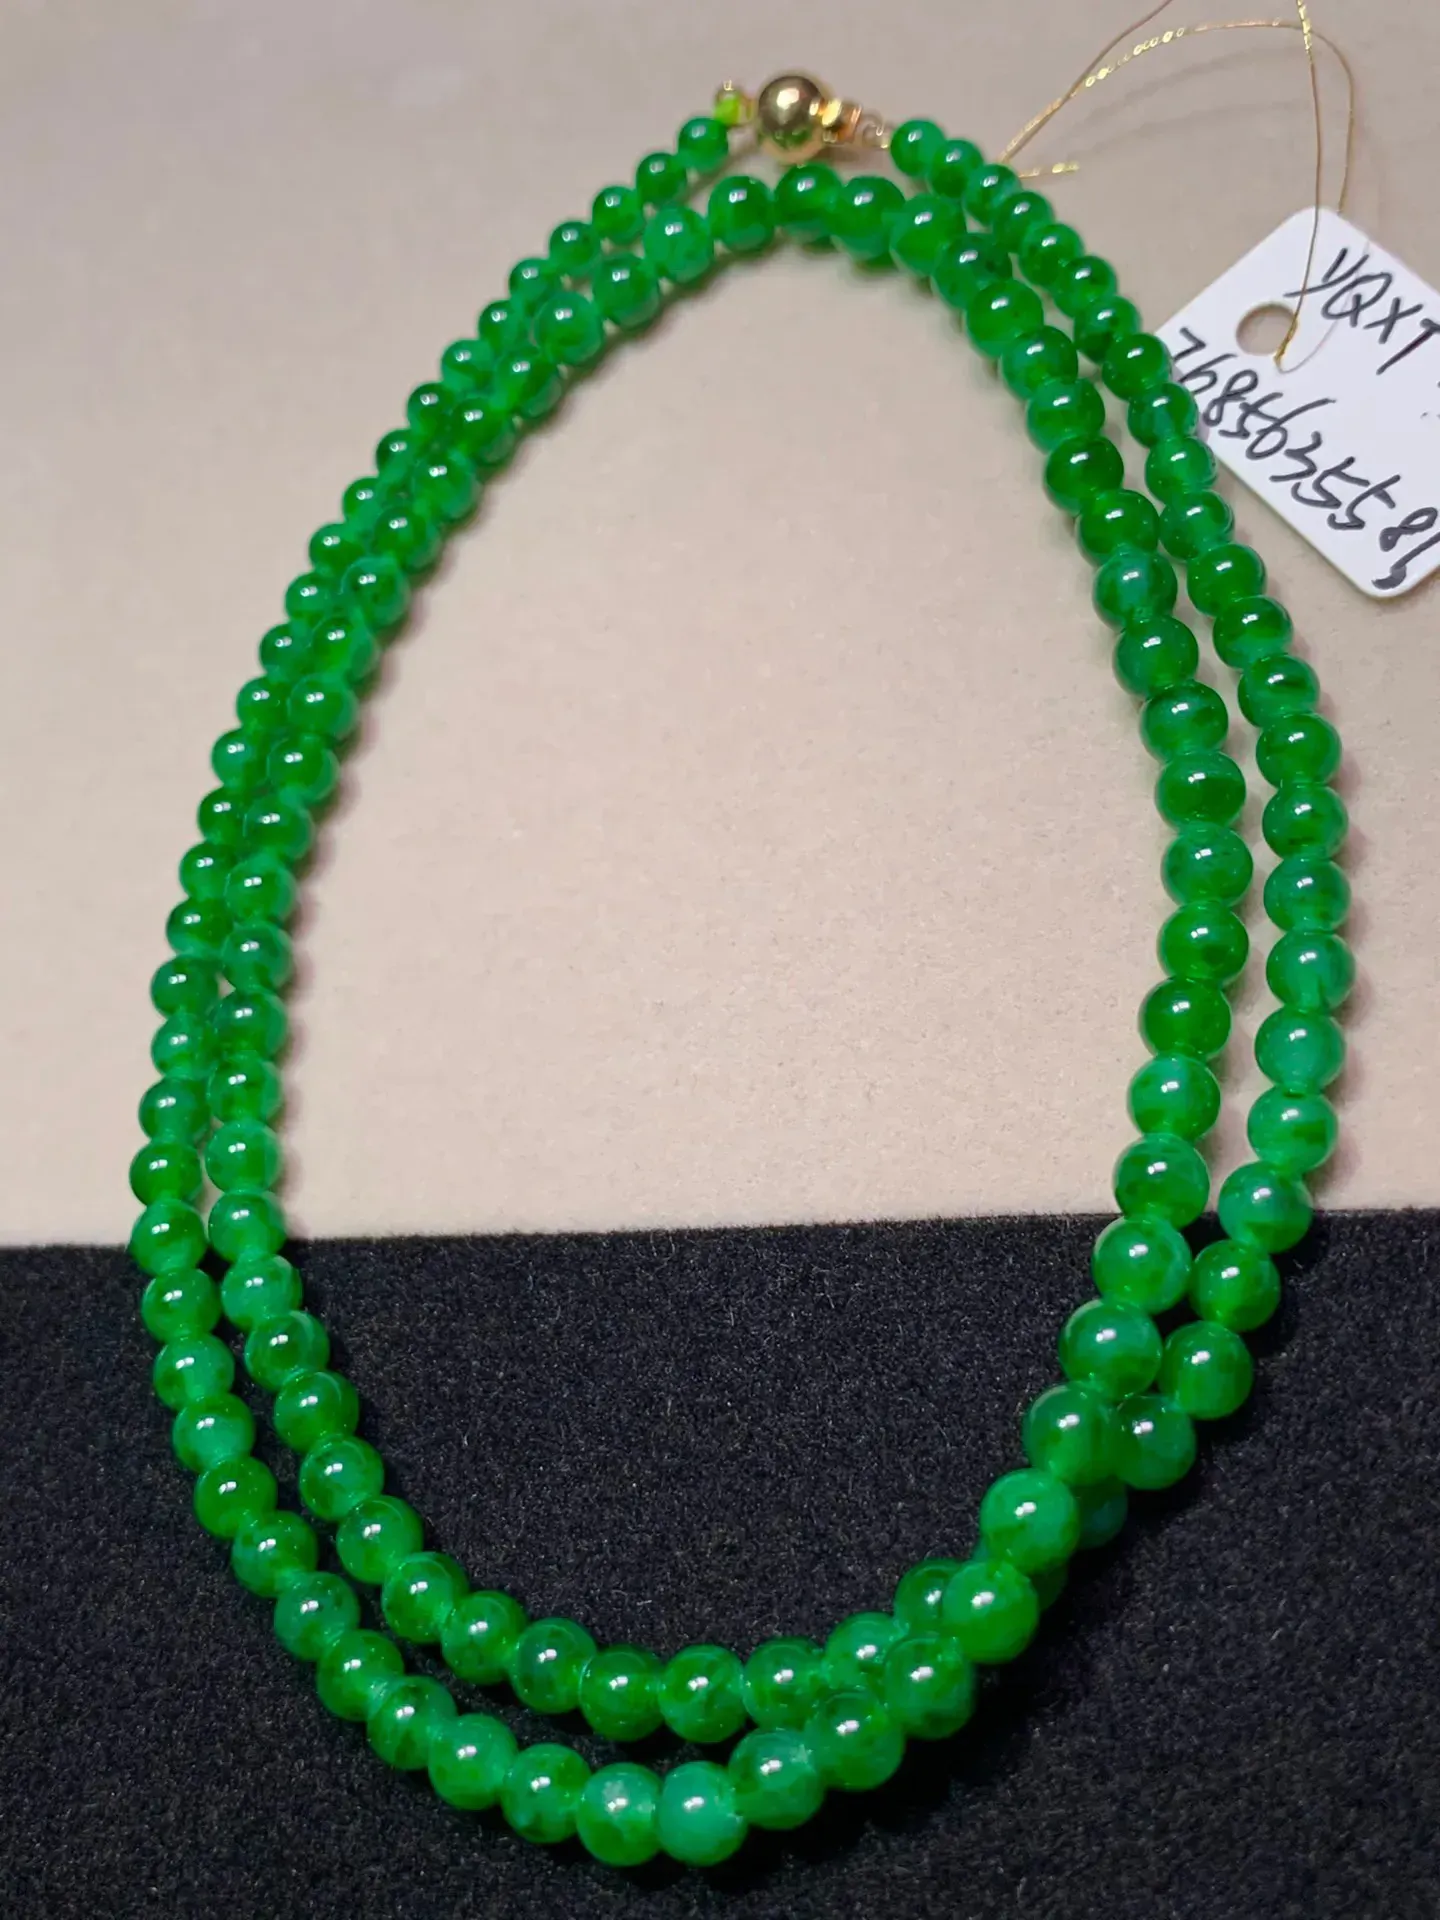 冰种辣绿珠子项链，直径:4.4mm  119颗   色泽艳丽 玉质水润  底色清爽 款式时尚  精致